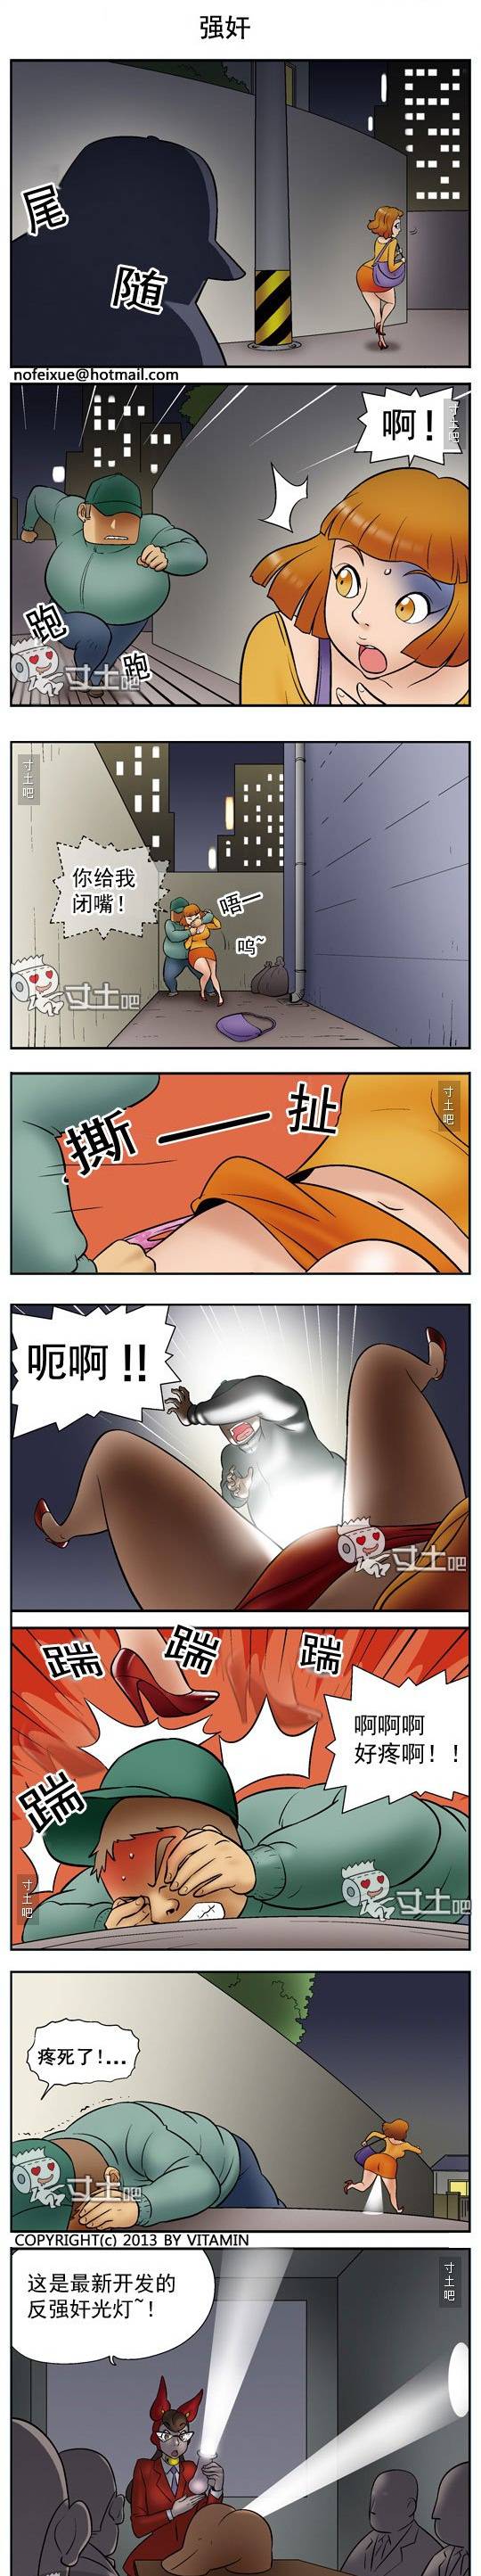 邪恶漫画爆笑囧图第353刊：奶油用处